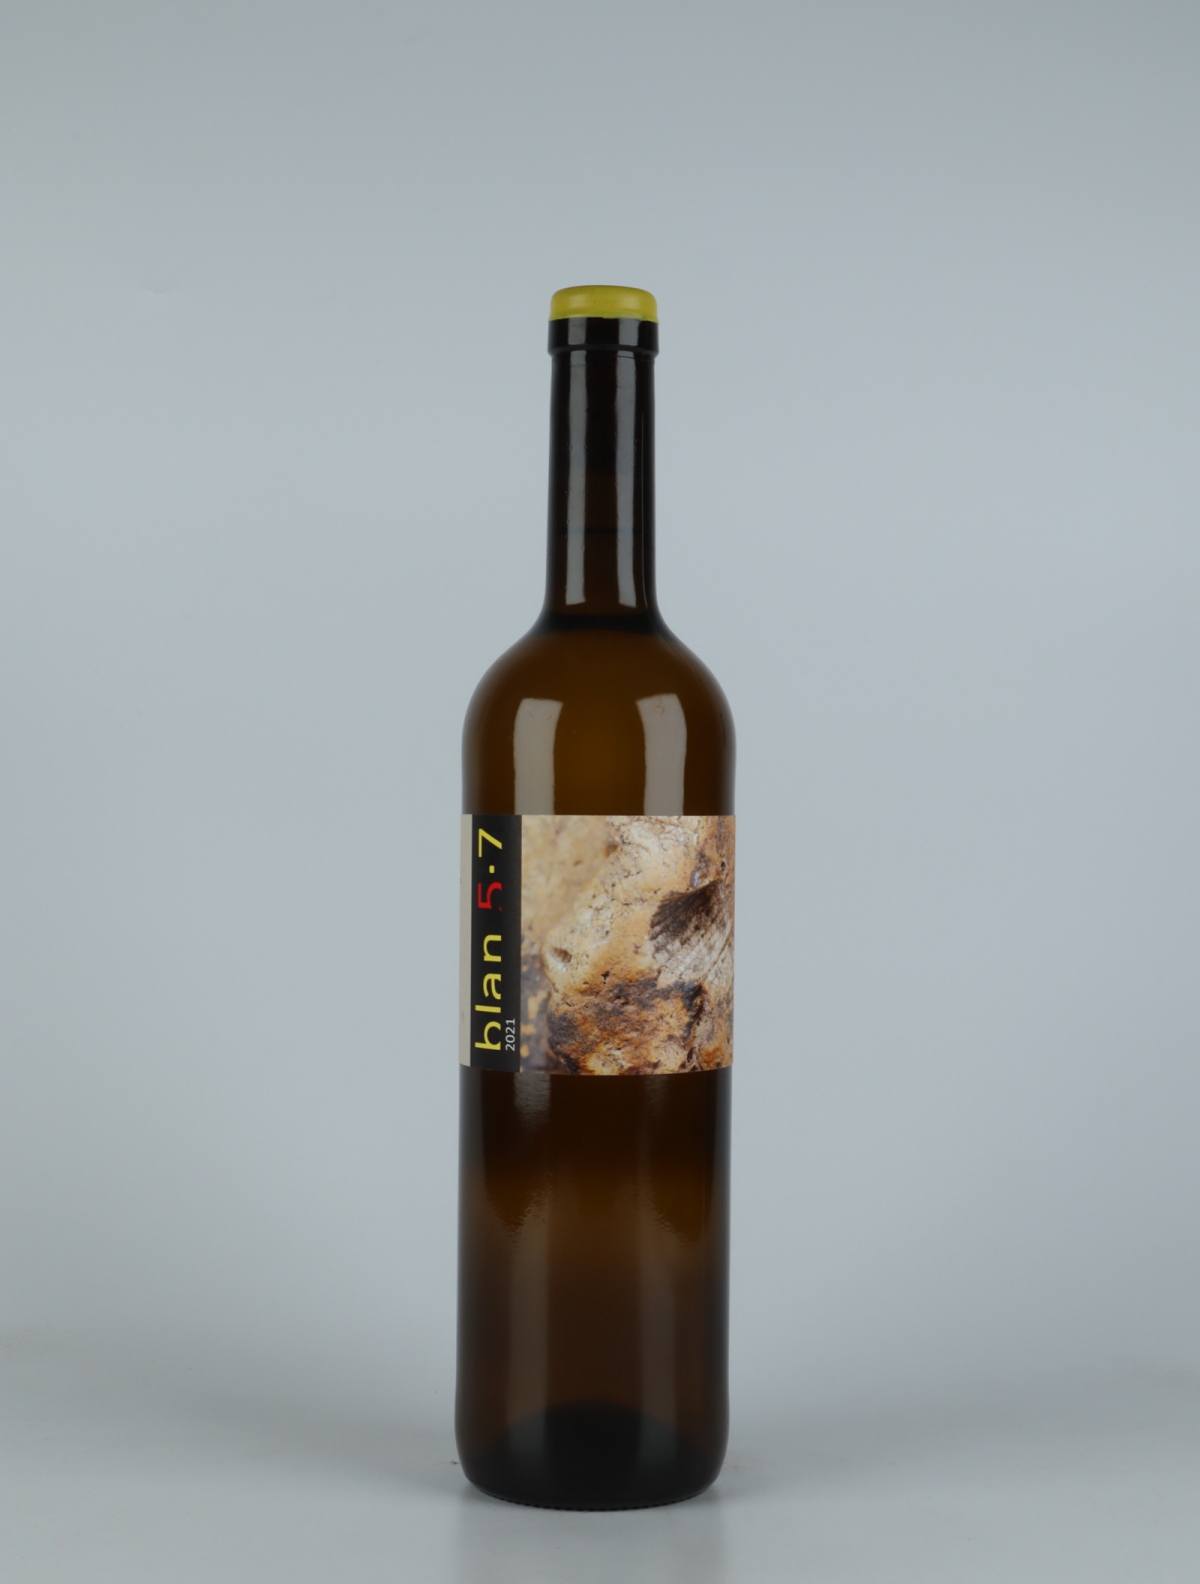 En flaske 2021 Blan 5-7 Orange vin fra Jordi Llorens, Catalonien i Spanien